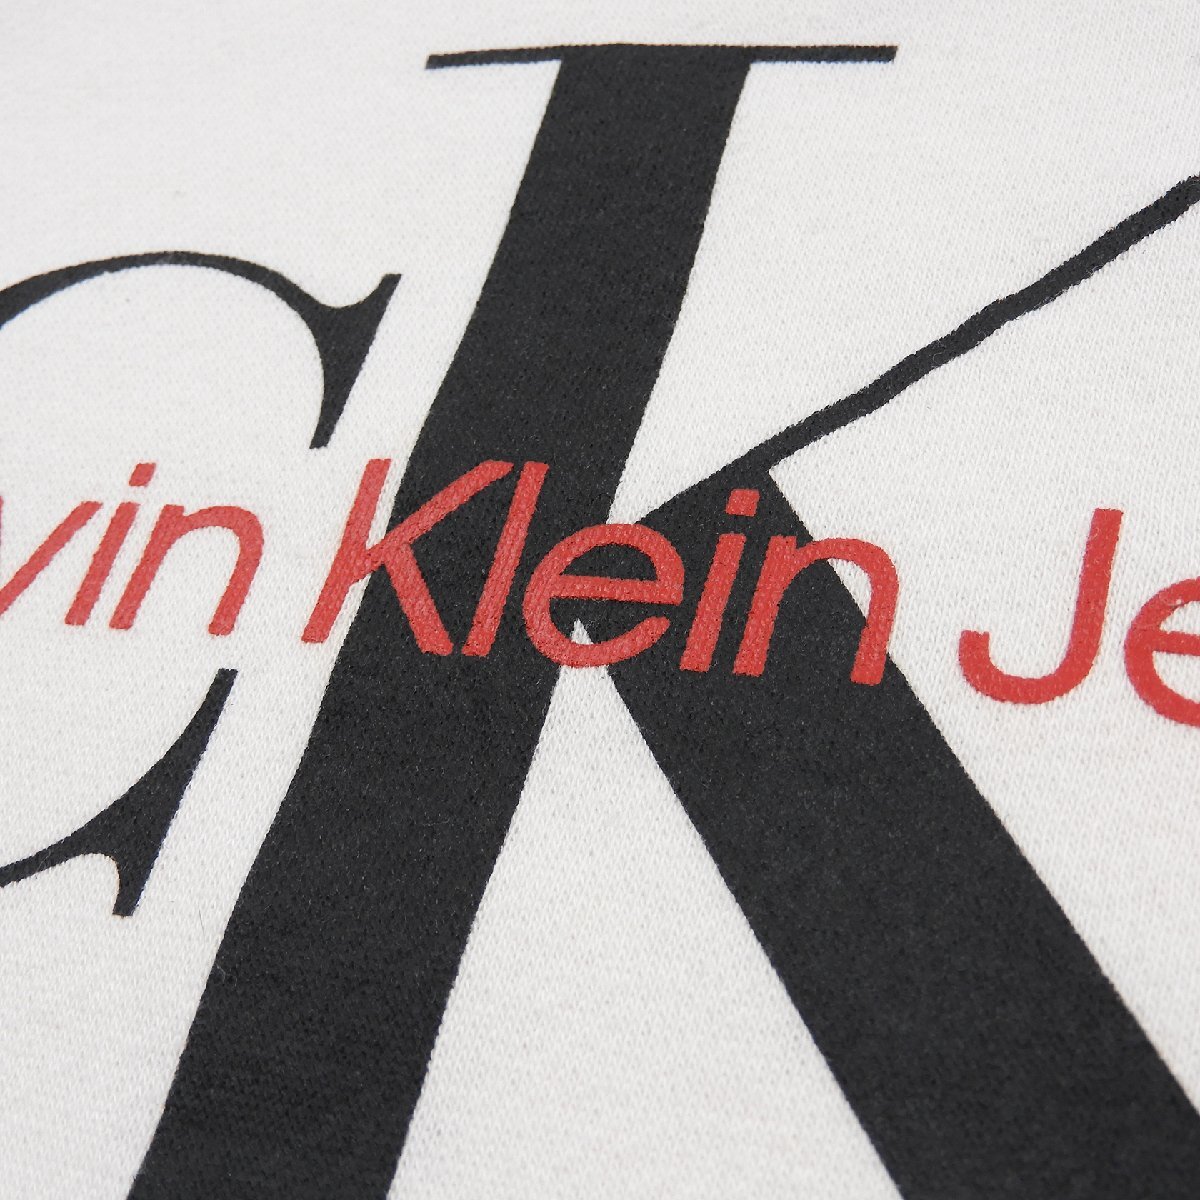 Calvin Klein カルバンクライン スウェット パーカー Size XL 18-20 #18458 アメカジ カジュアル ユース 子供服の画像4